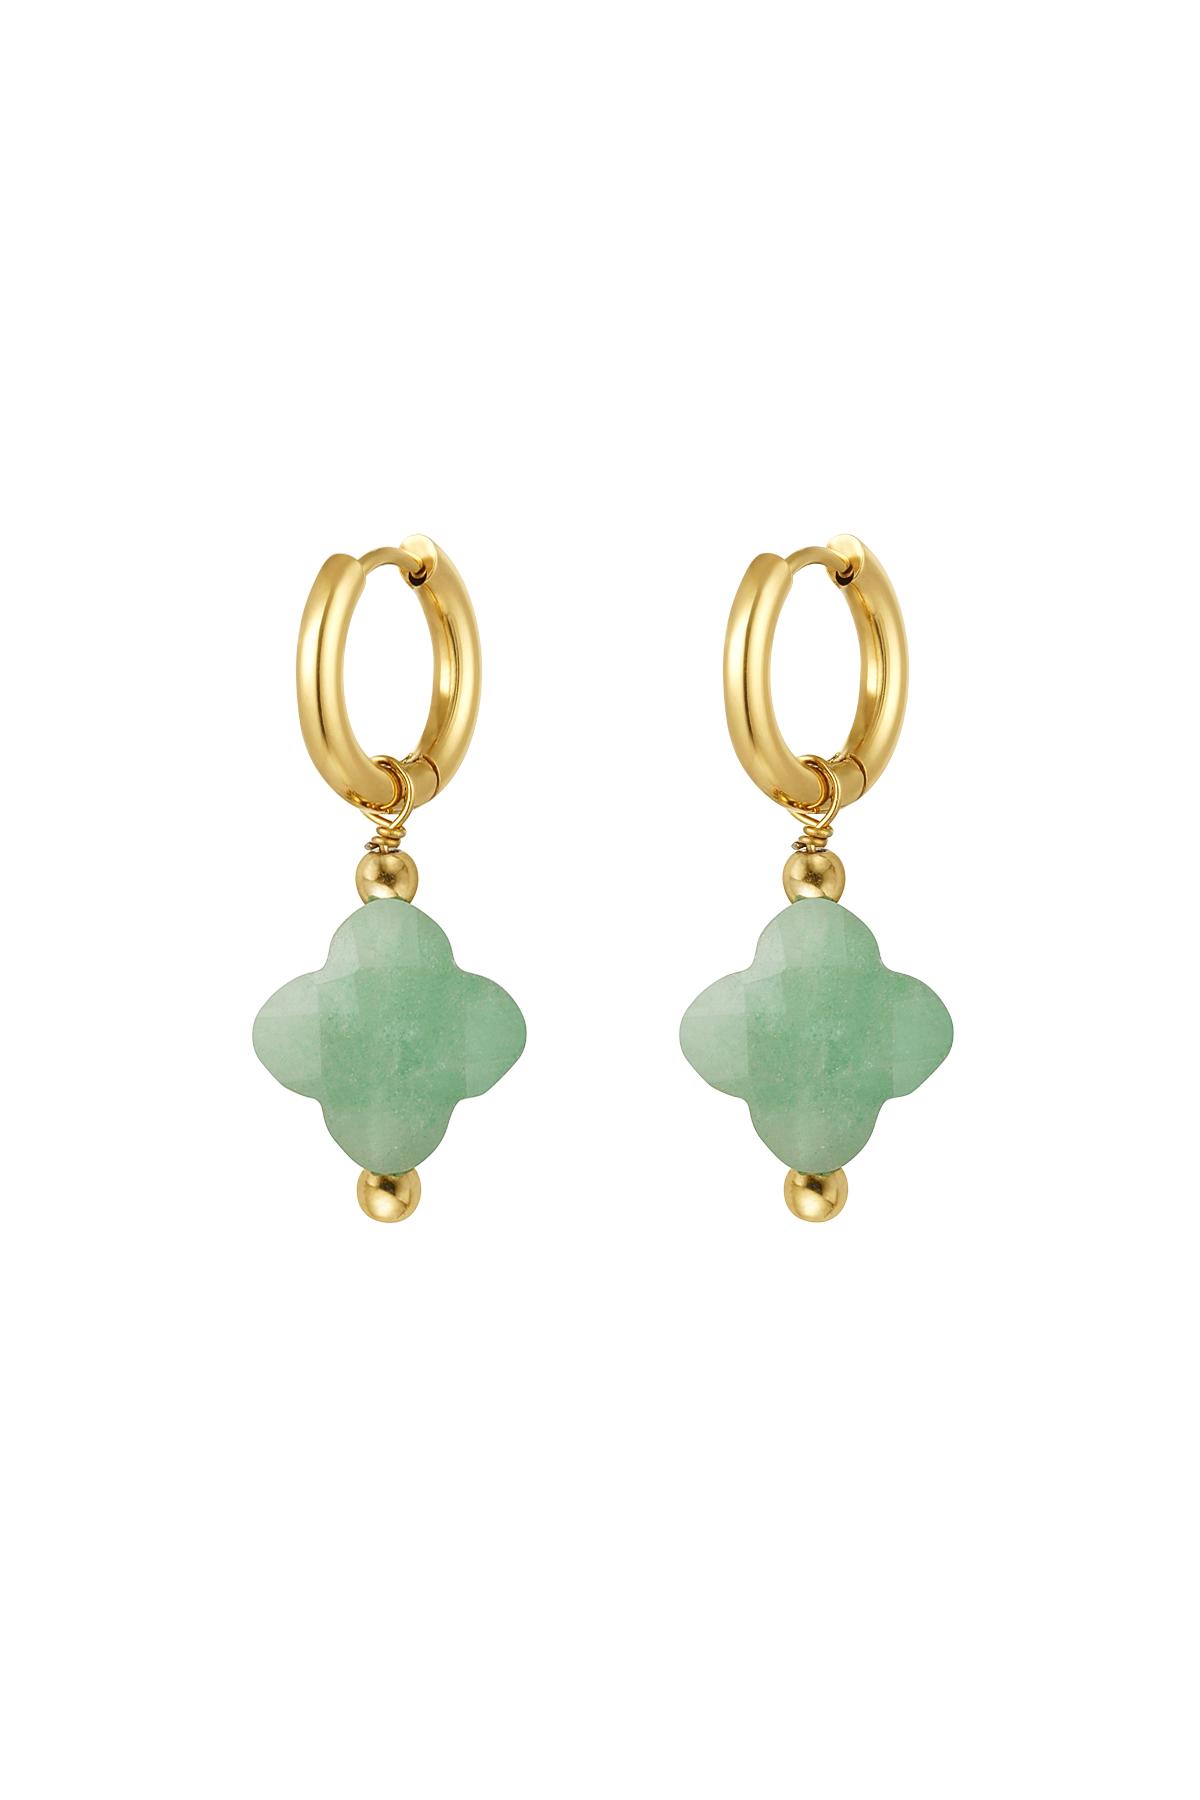 Boucles d'oreilles couleur trèfle - Collection pierres naturelles Vert & Or Acier inoxydable h5 